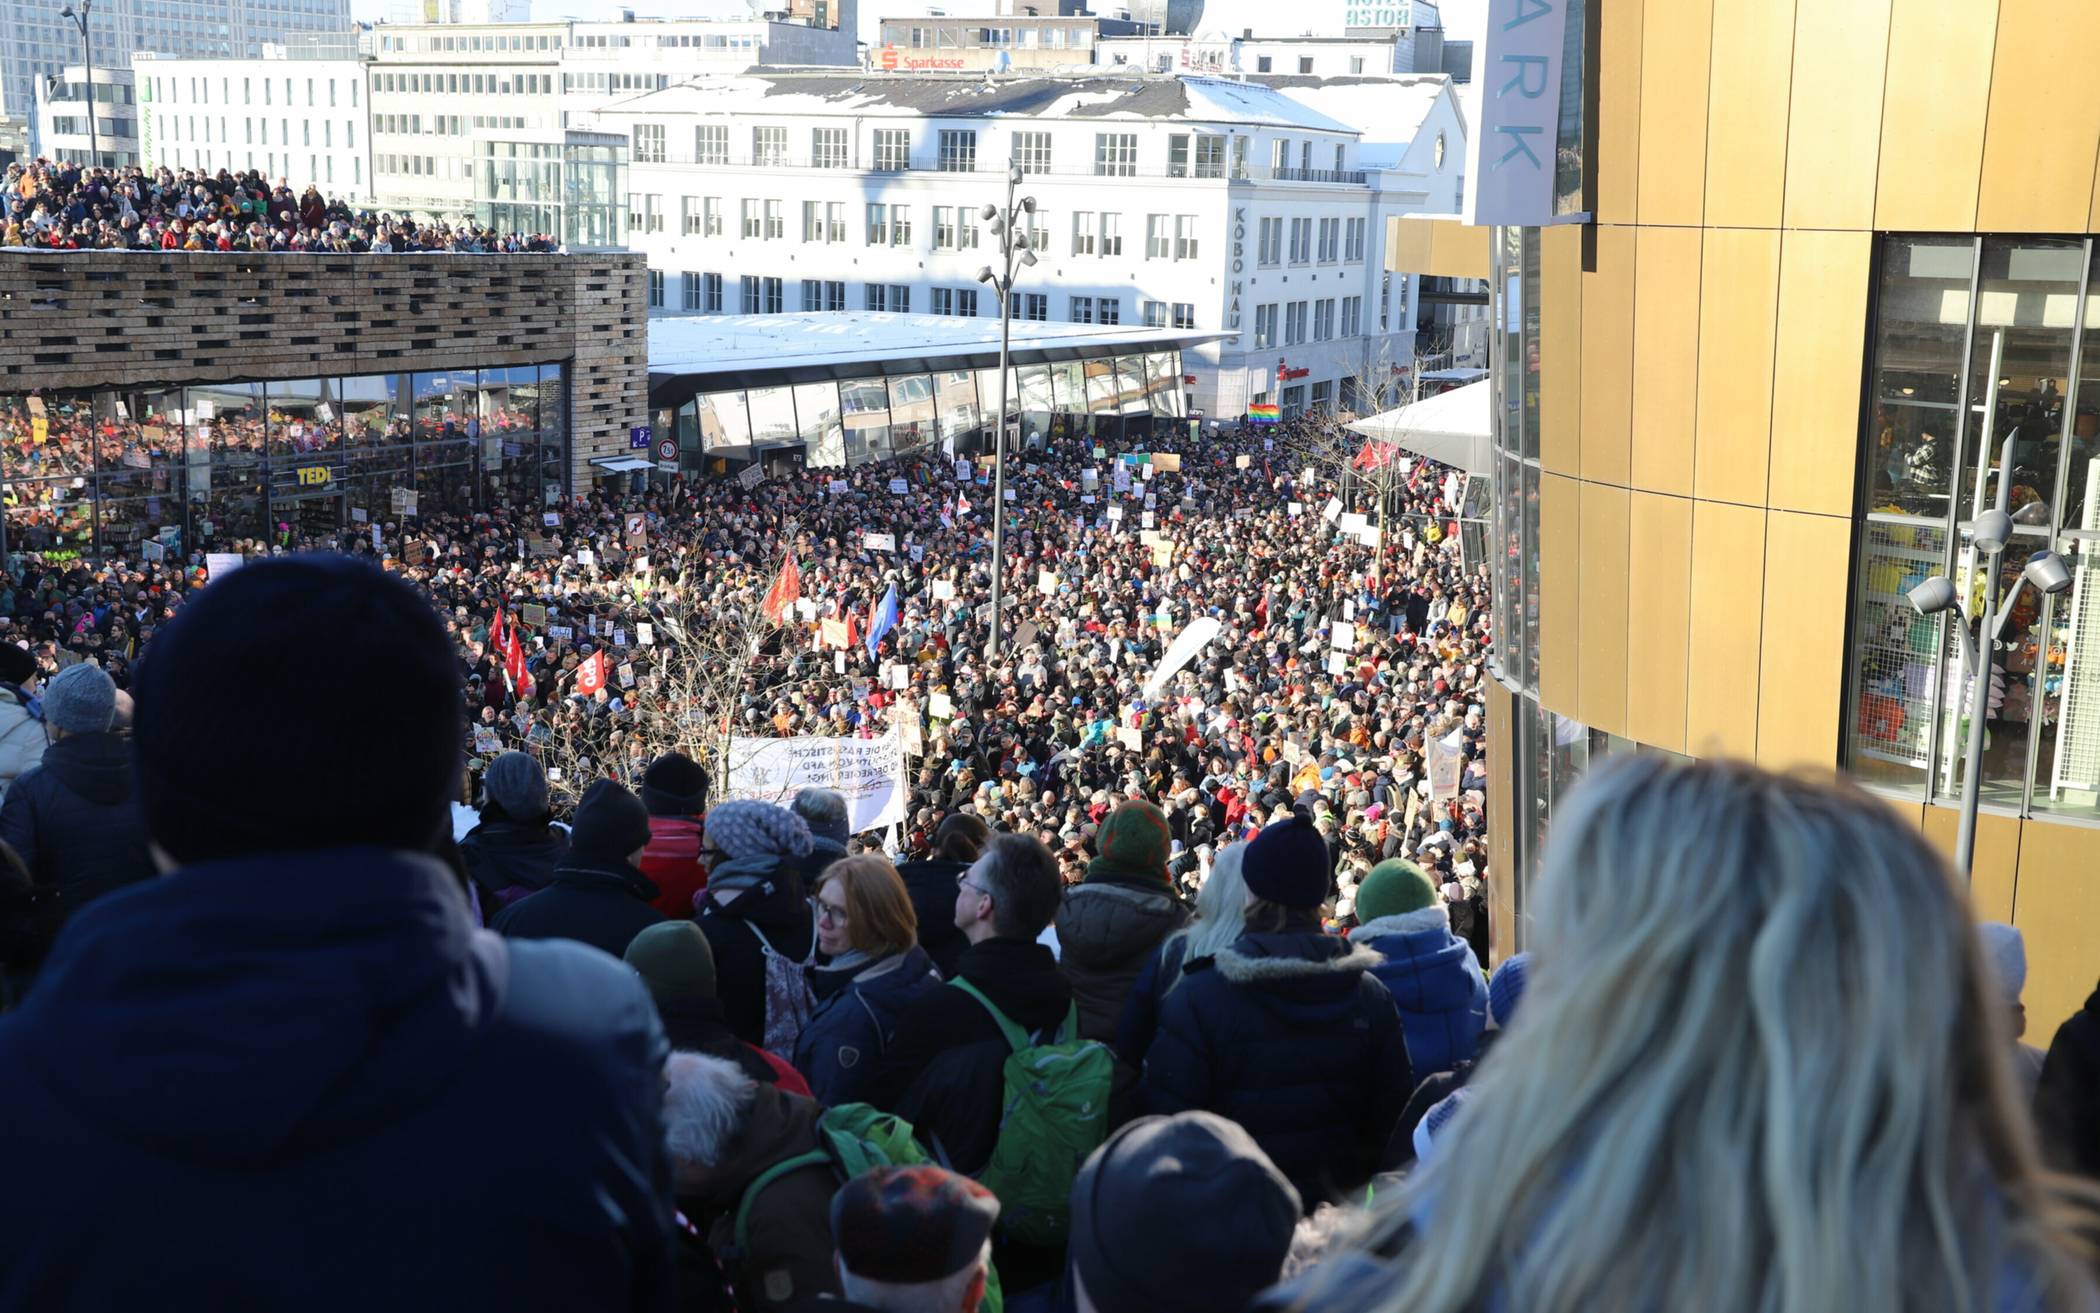  Rund 10.000 Menschen kamen zu der Demo am Samstag. 